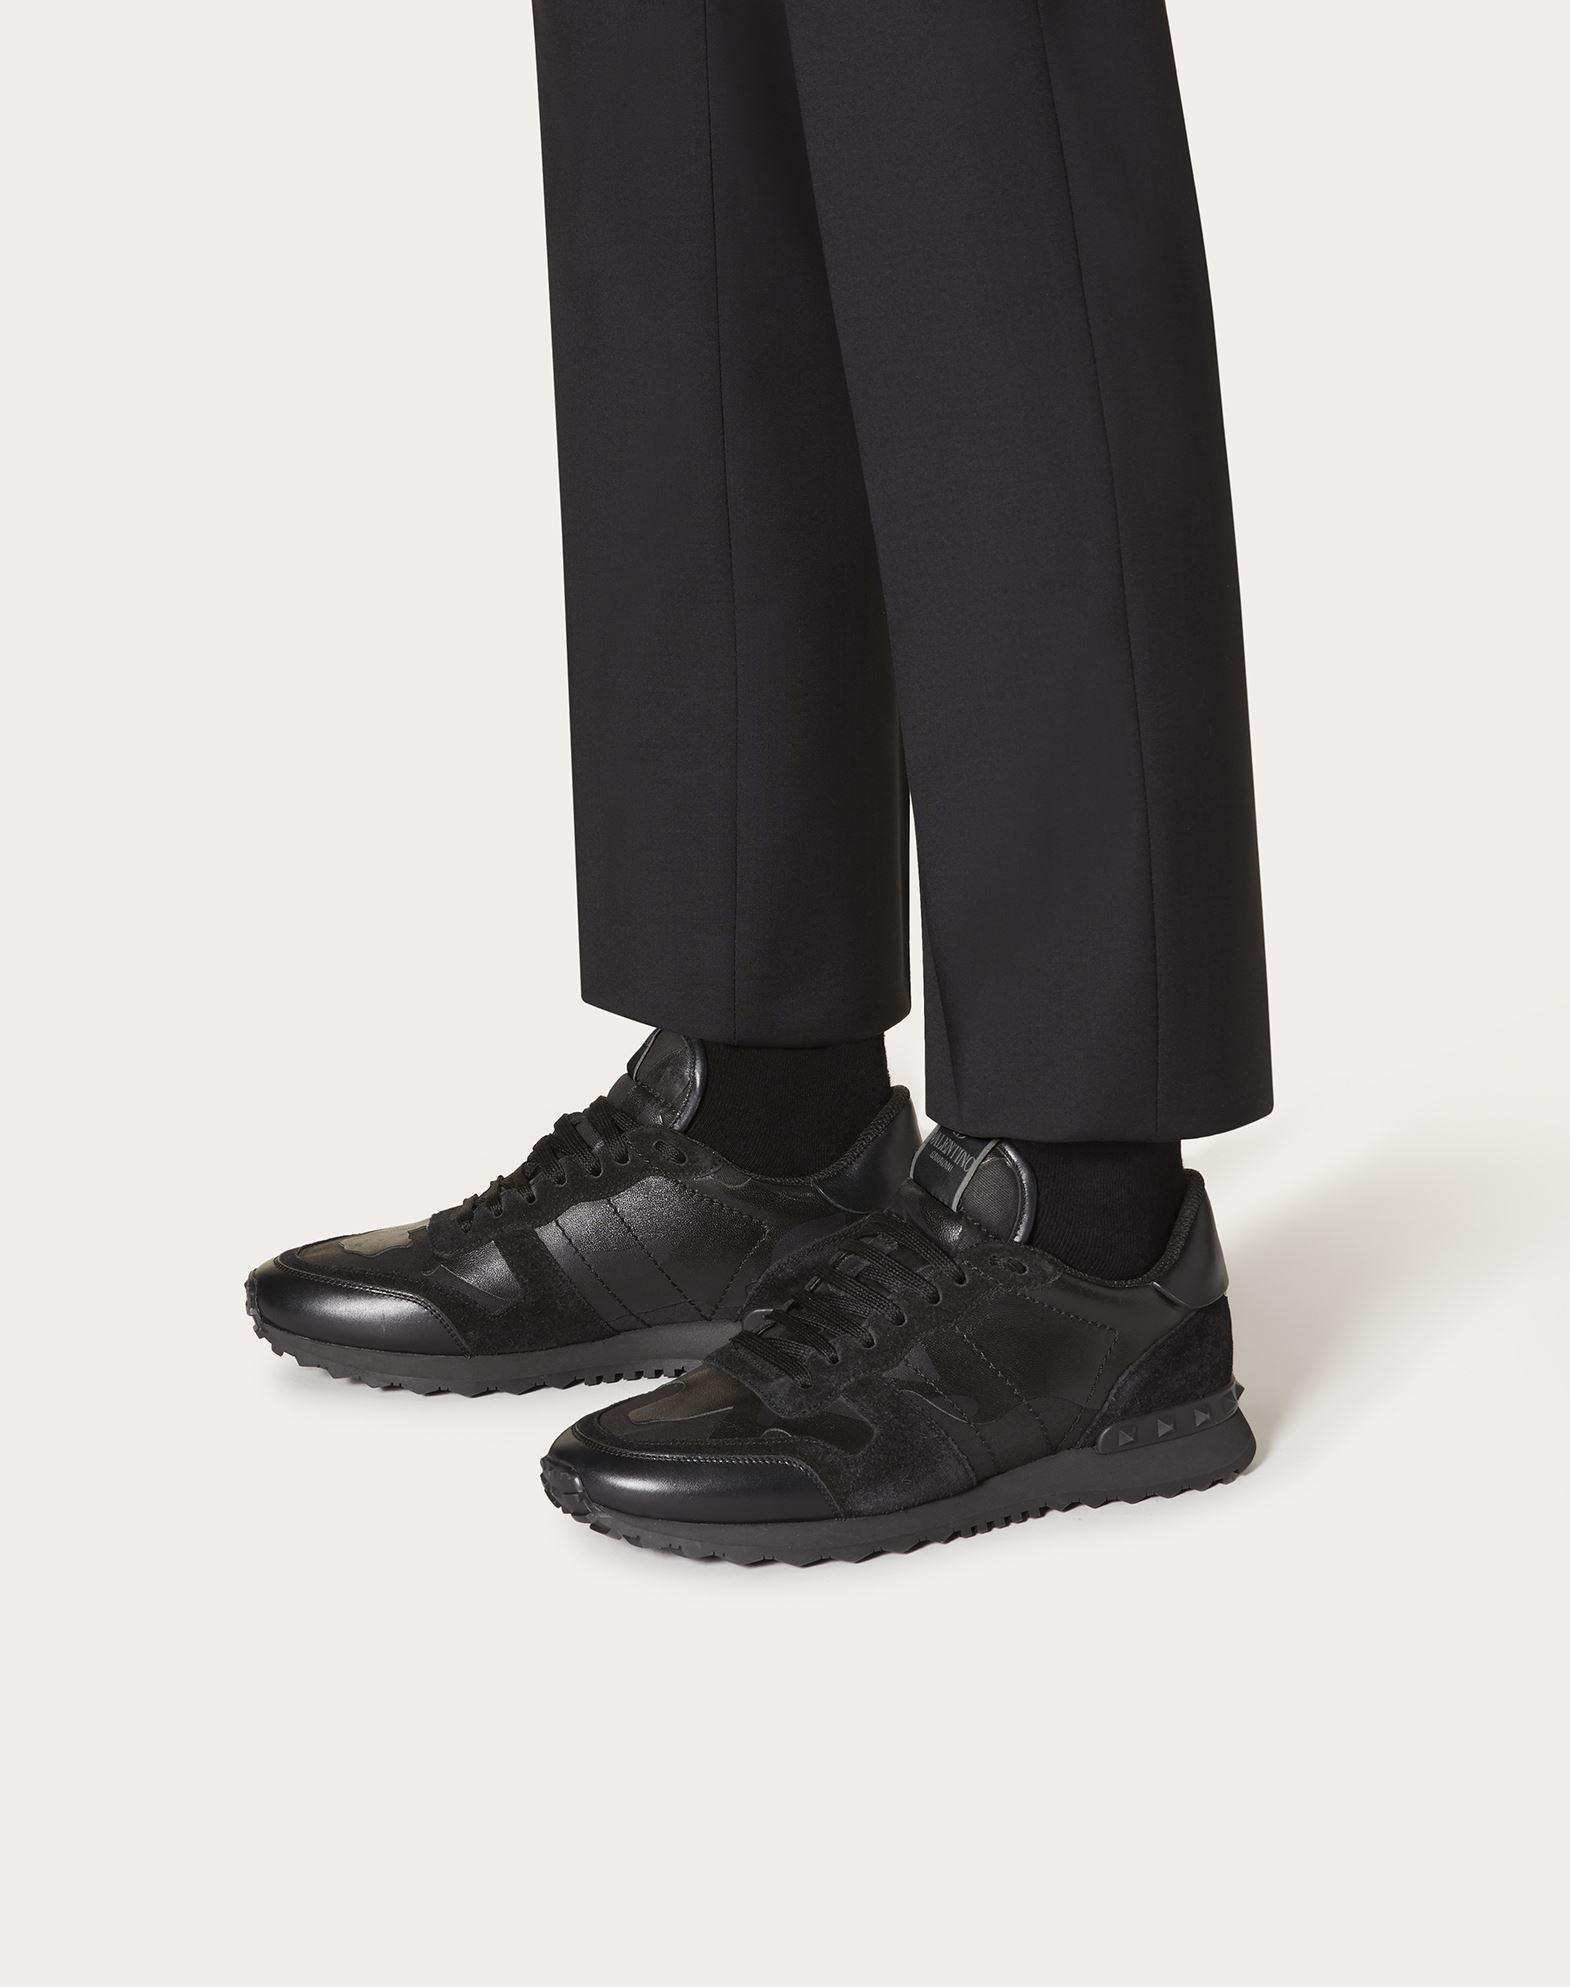 Speciaal nieuwigheid ik heb het gevonden Valentino Garavani Rubber Valentino Garavani Camouflage Noir Rockrunner  Sneaker in Black/Black (Black) for Men - Lyst